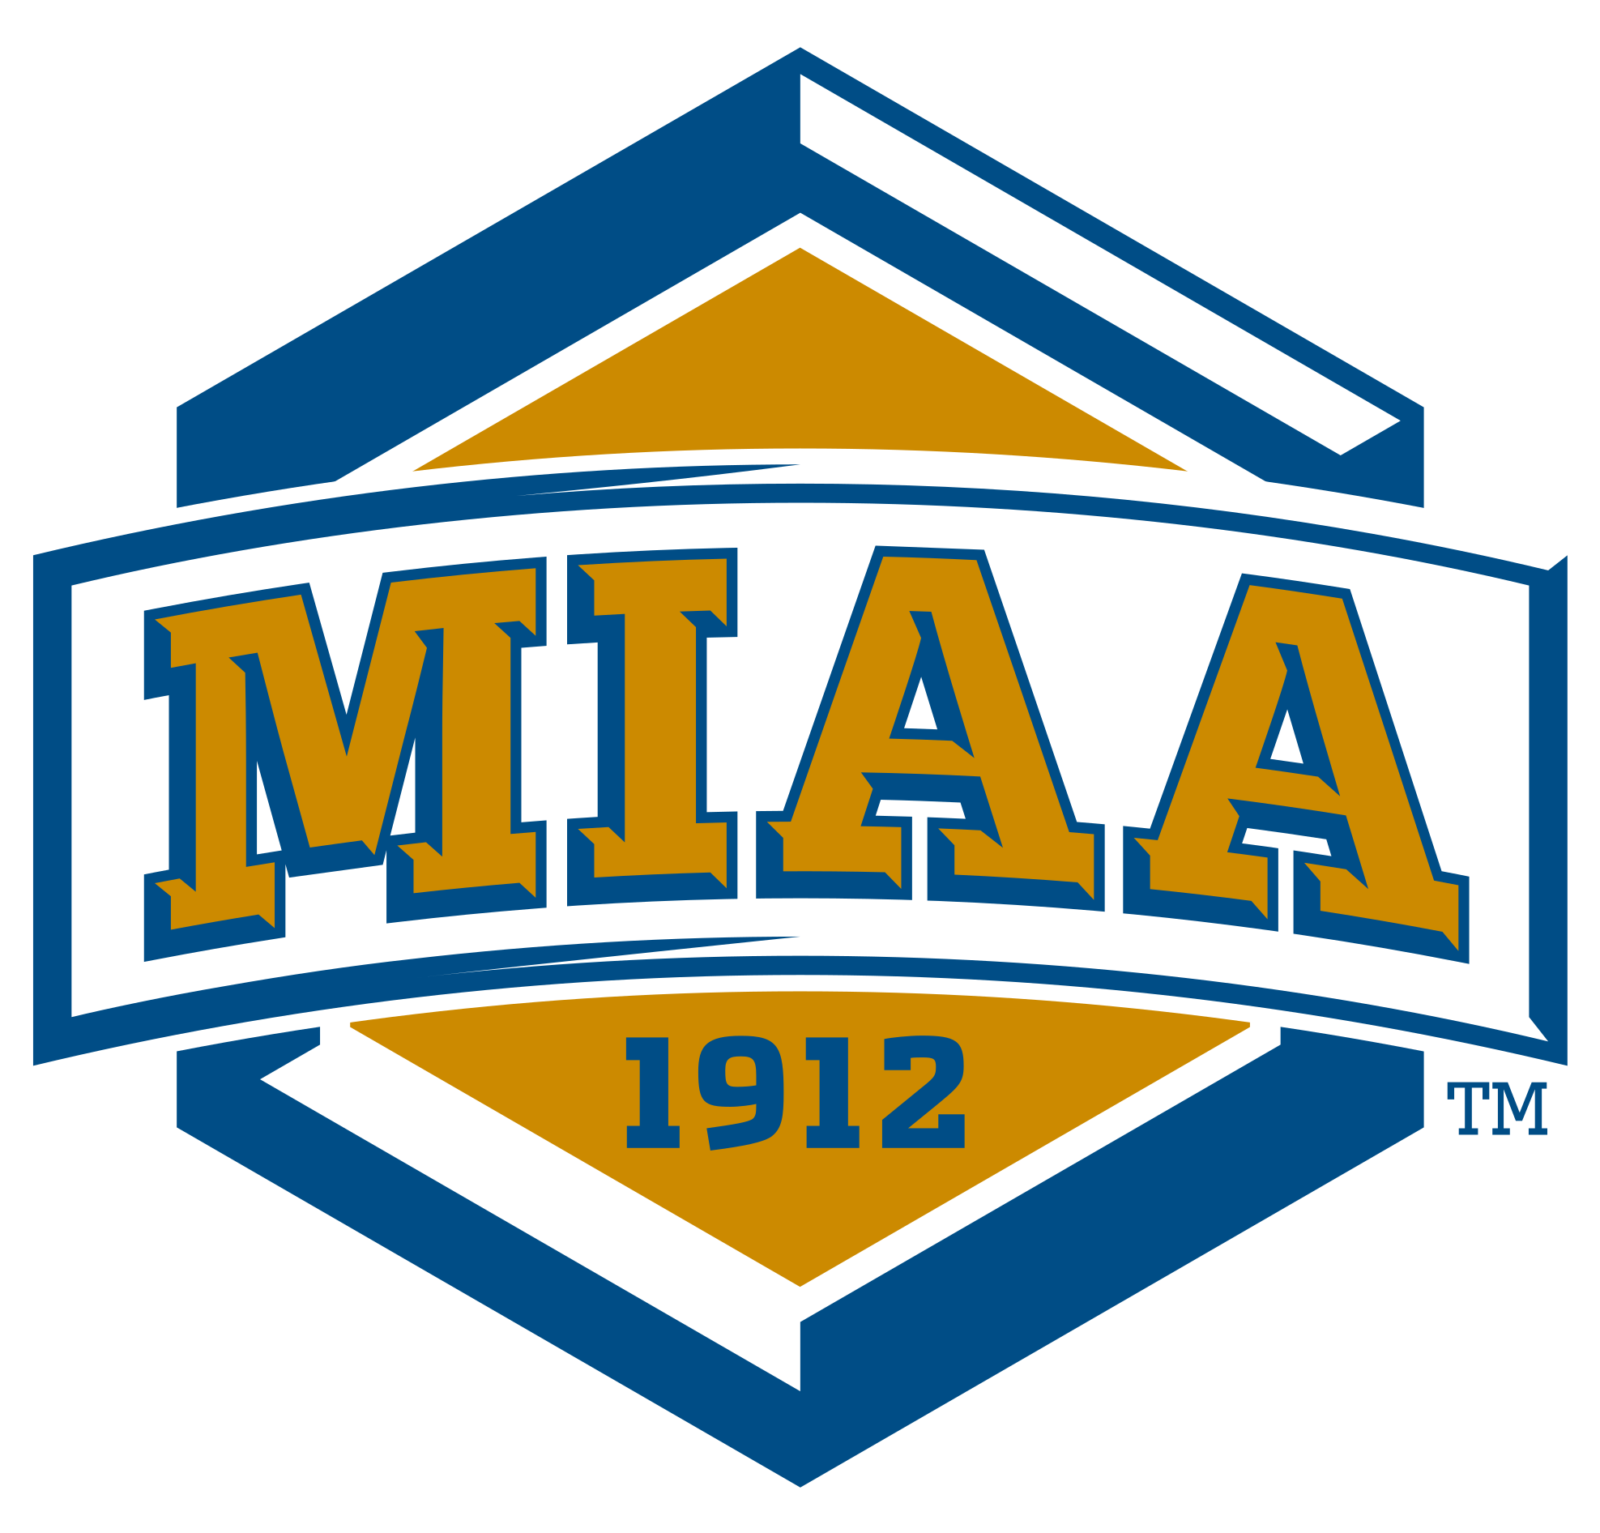 Mid America Intercollegiate Athletics Association Logo